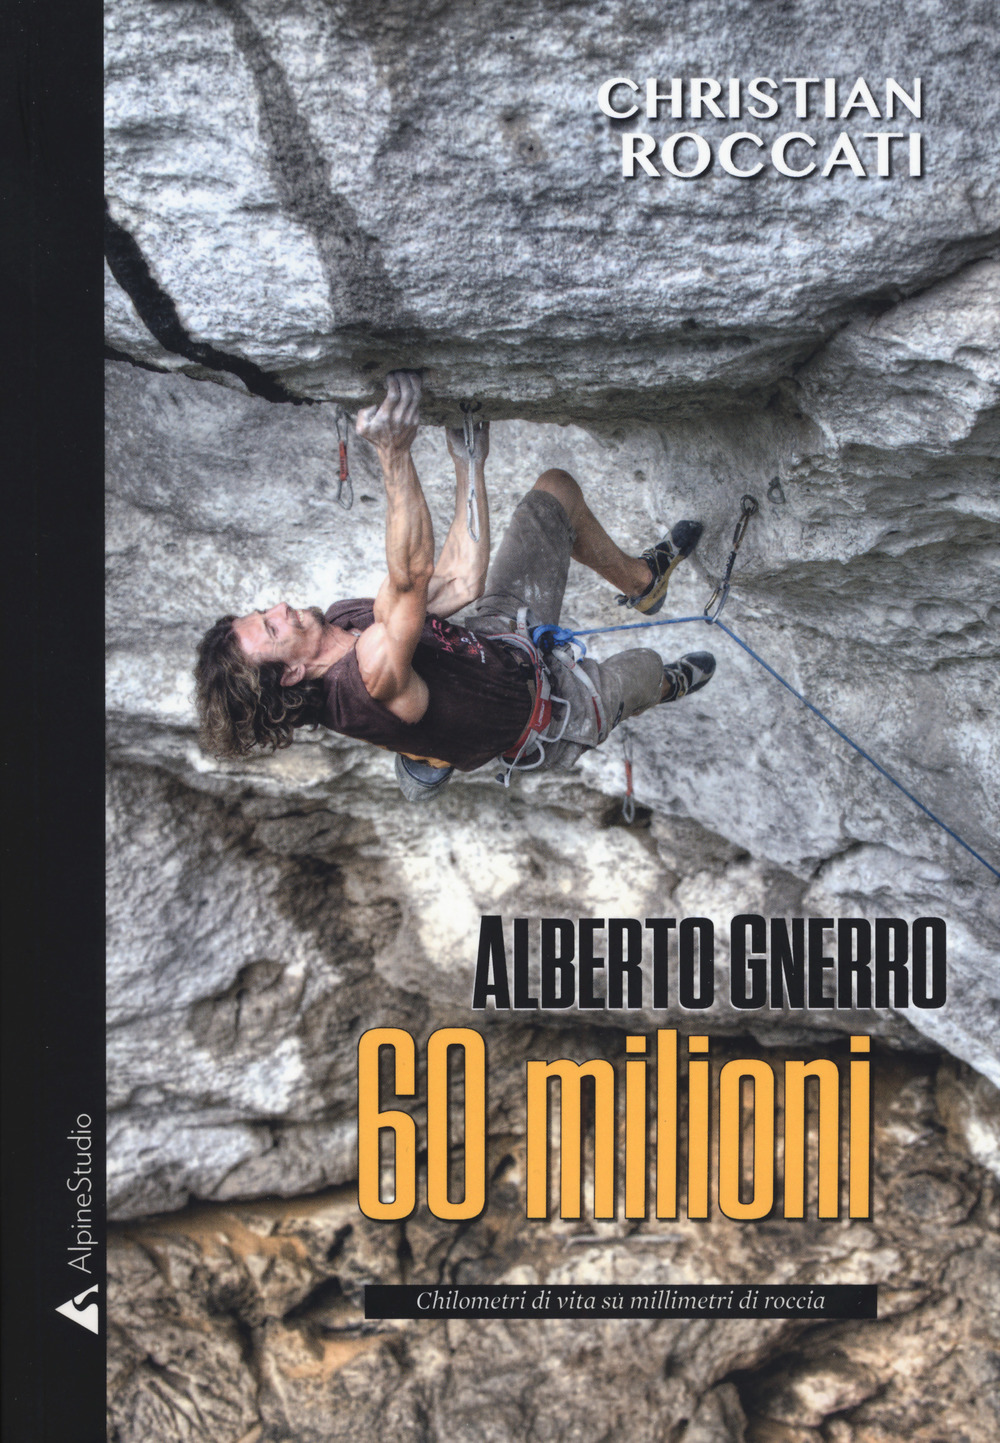 60 milioni. Alberto Gnerro, chilometri di vita su millimetri di roccia